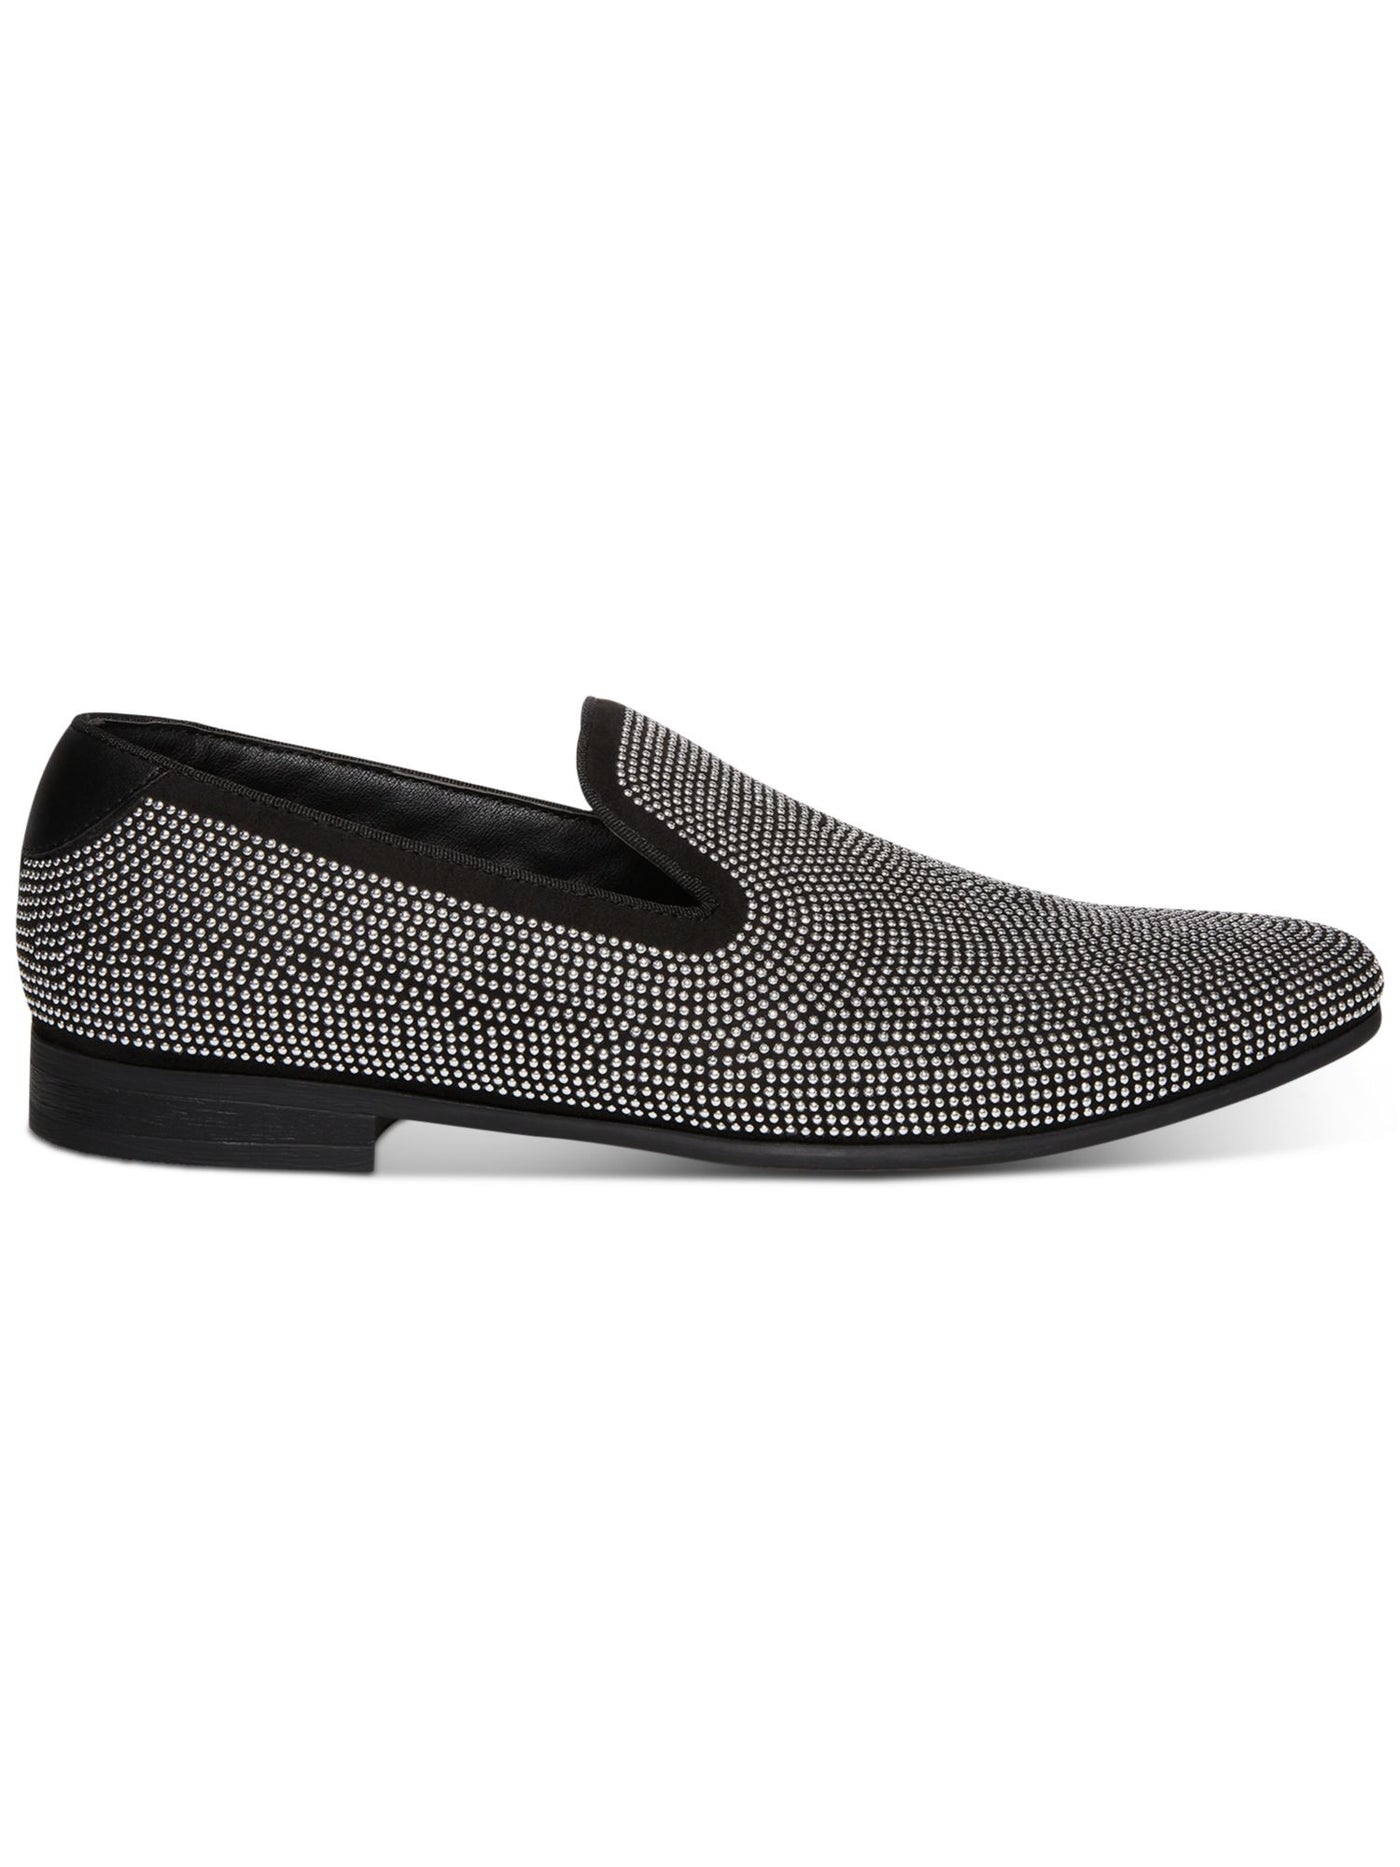 STEVE MADDEN Mens Silver Studded Mezmoryz Almond Toe Slip On Slippers Shoes 8.5